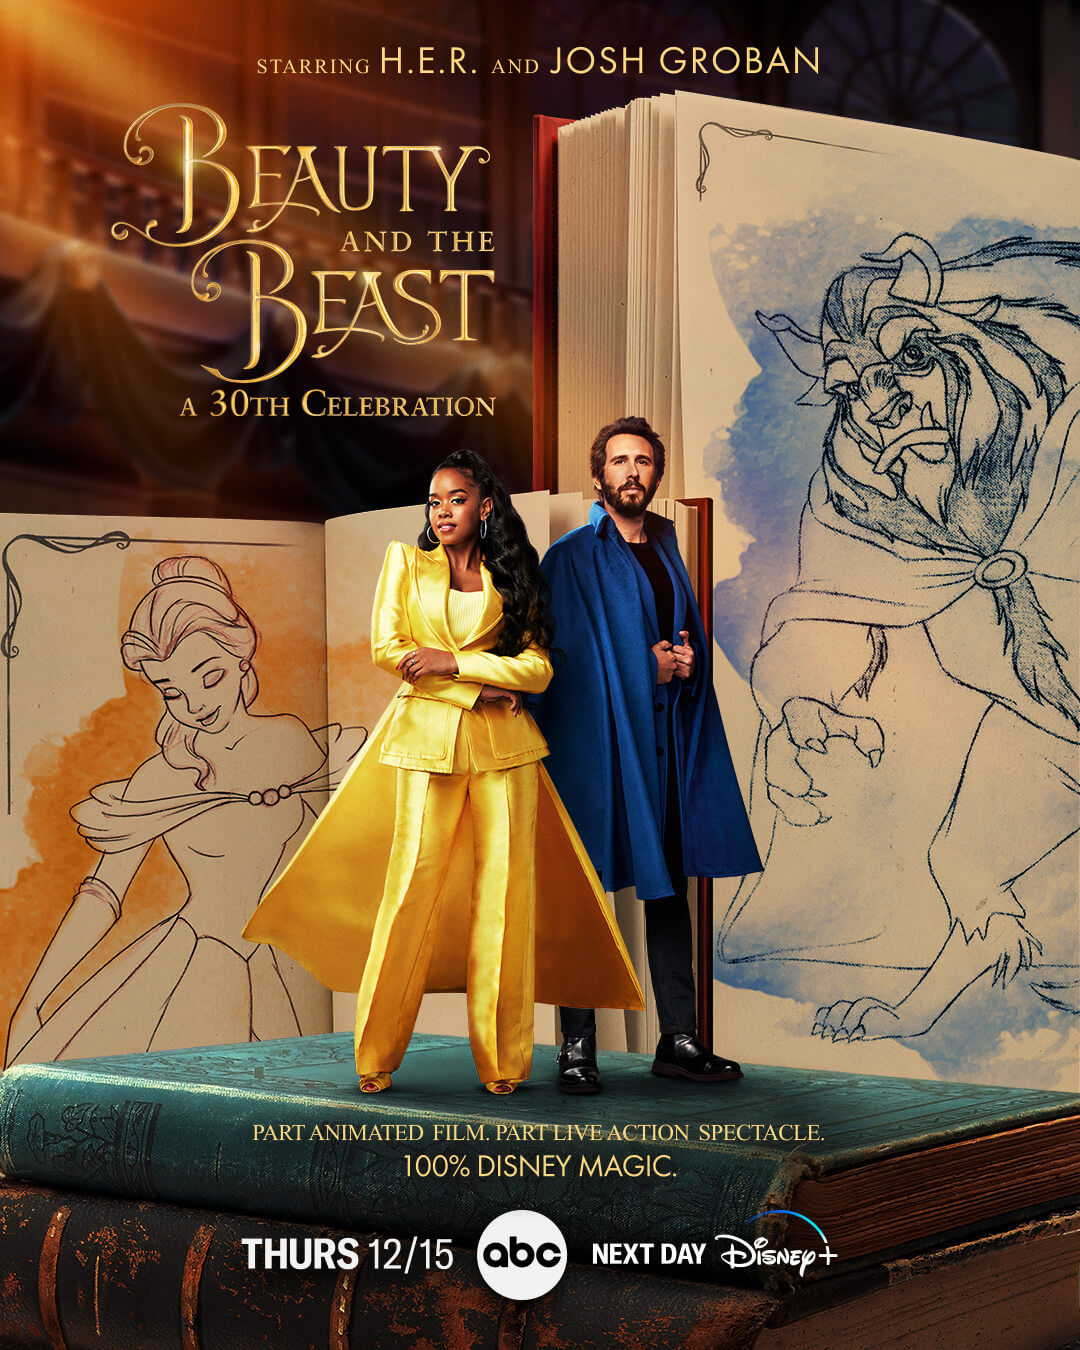 LA BELLE & LA BÊTE - LE FILM - Disney Monde Enchanté - Disney